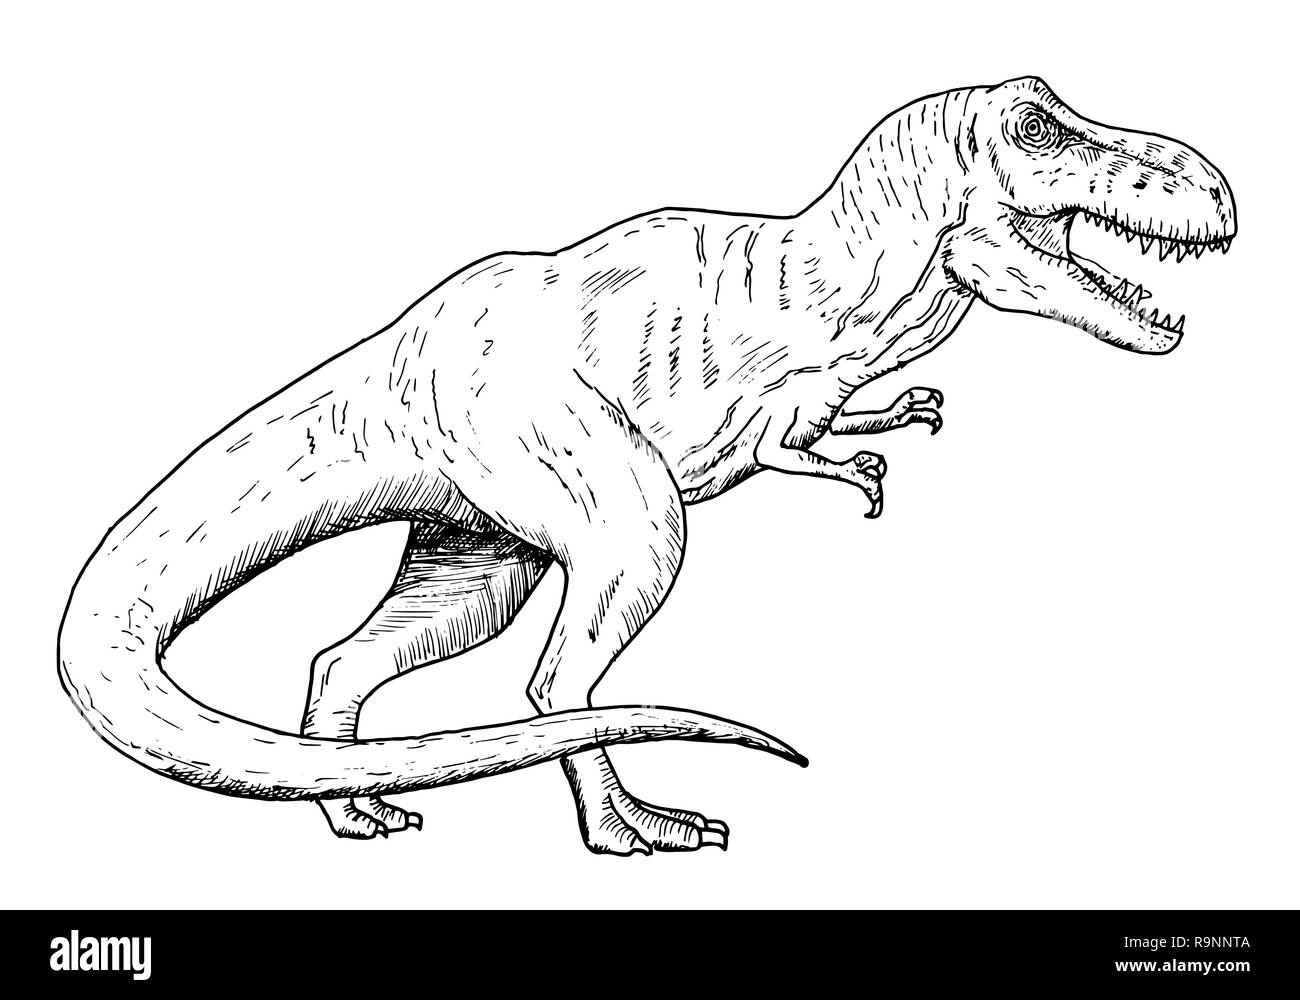 டைனோசர் மிருகமா ? பறவையா? Drawing-of-dinosaur-hand-sketch-of-tyrannosaurus-rex-black-and-white-illustration-R9NNTA